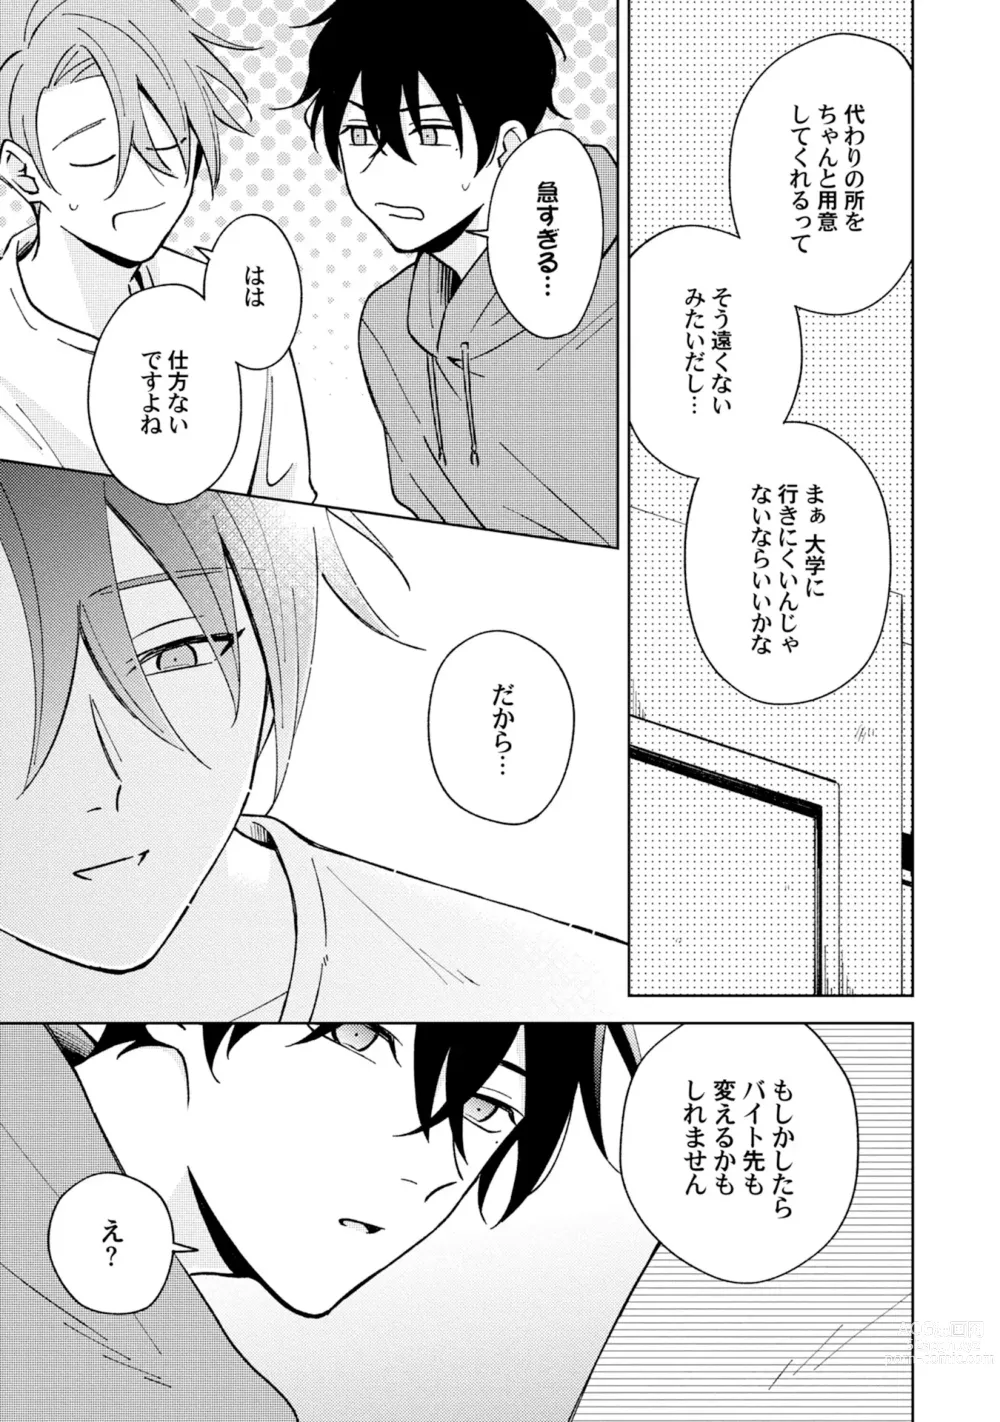 Page 5 of manga Toho 3-byou no Trouble Love Room 5